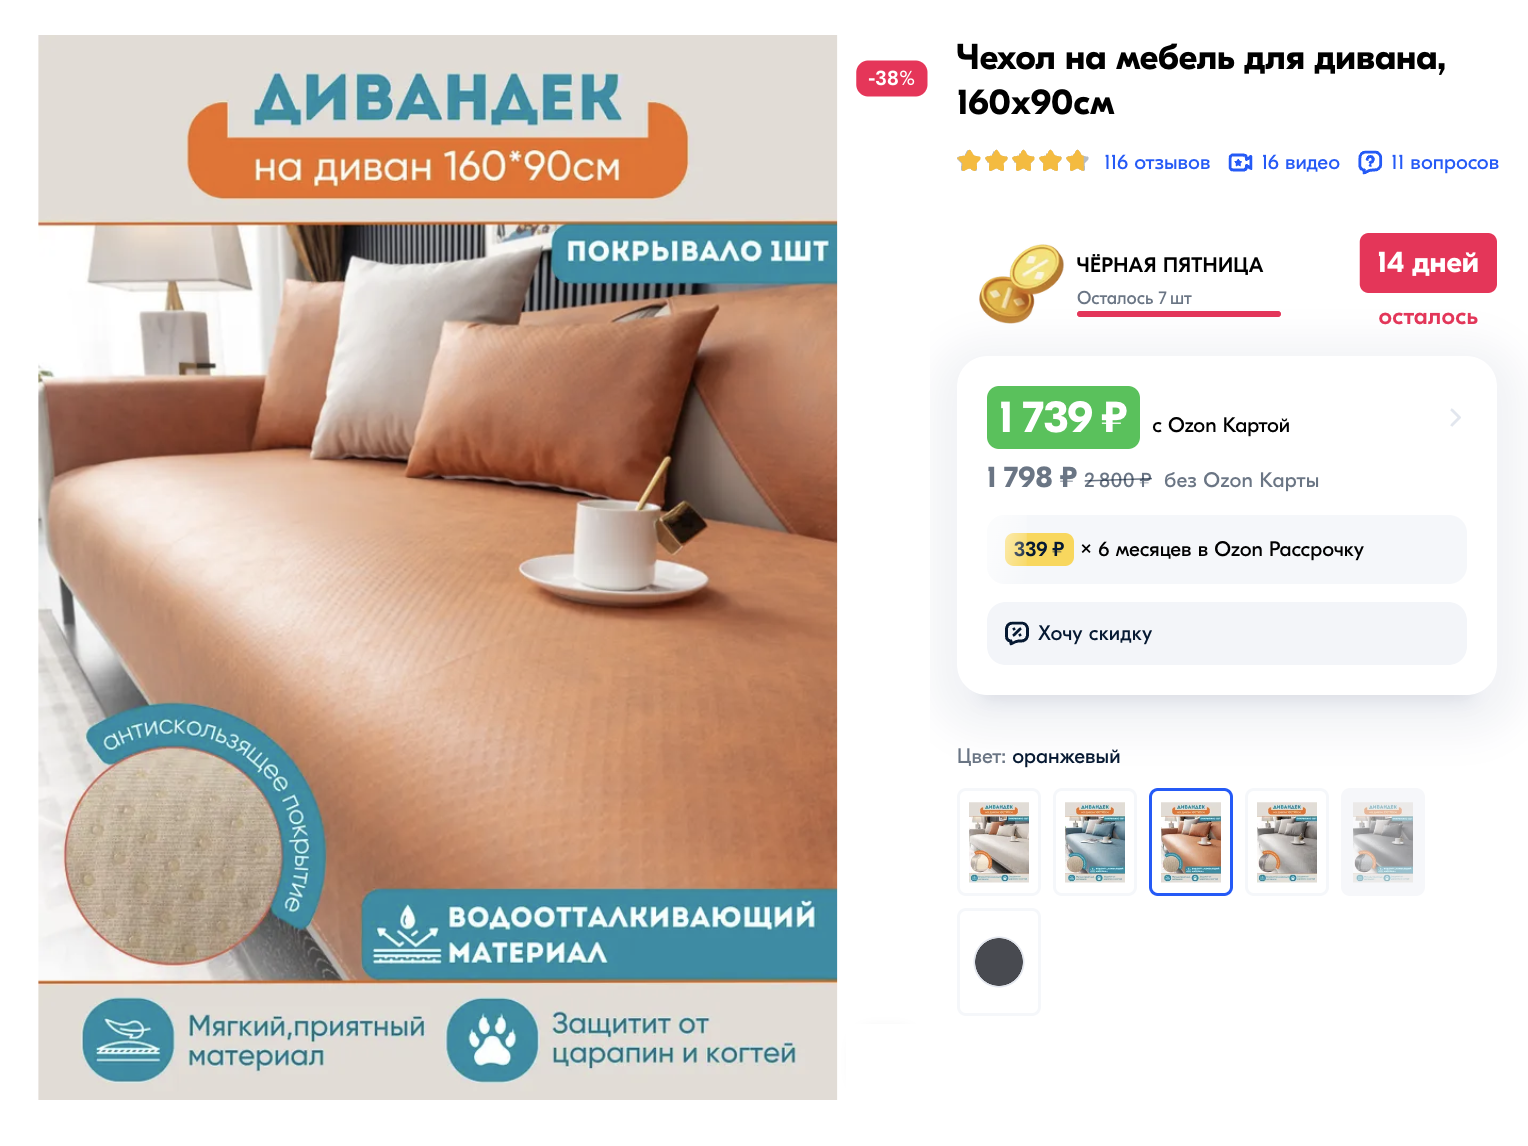 Если не хочется тратиться на чехол, можно купить антивандальные накидки на диван. Источник: ozon.ru